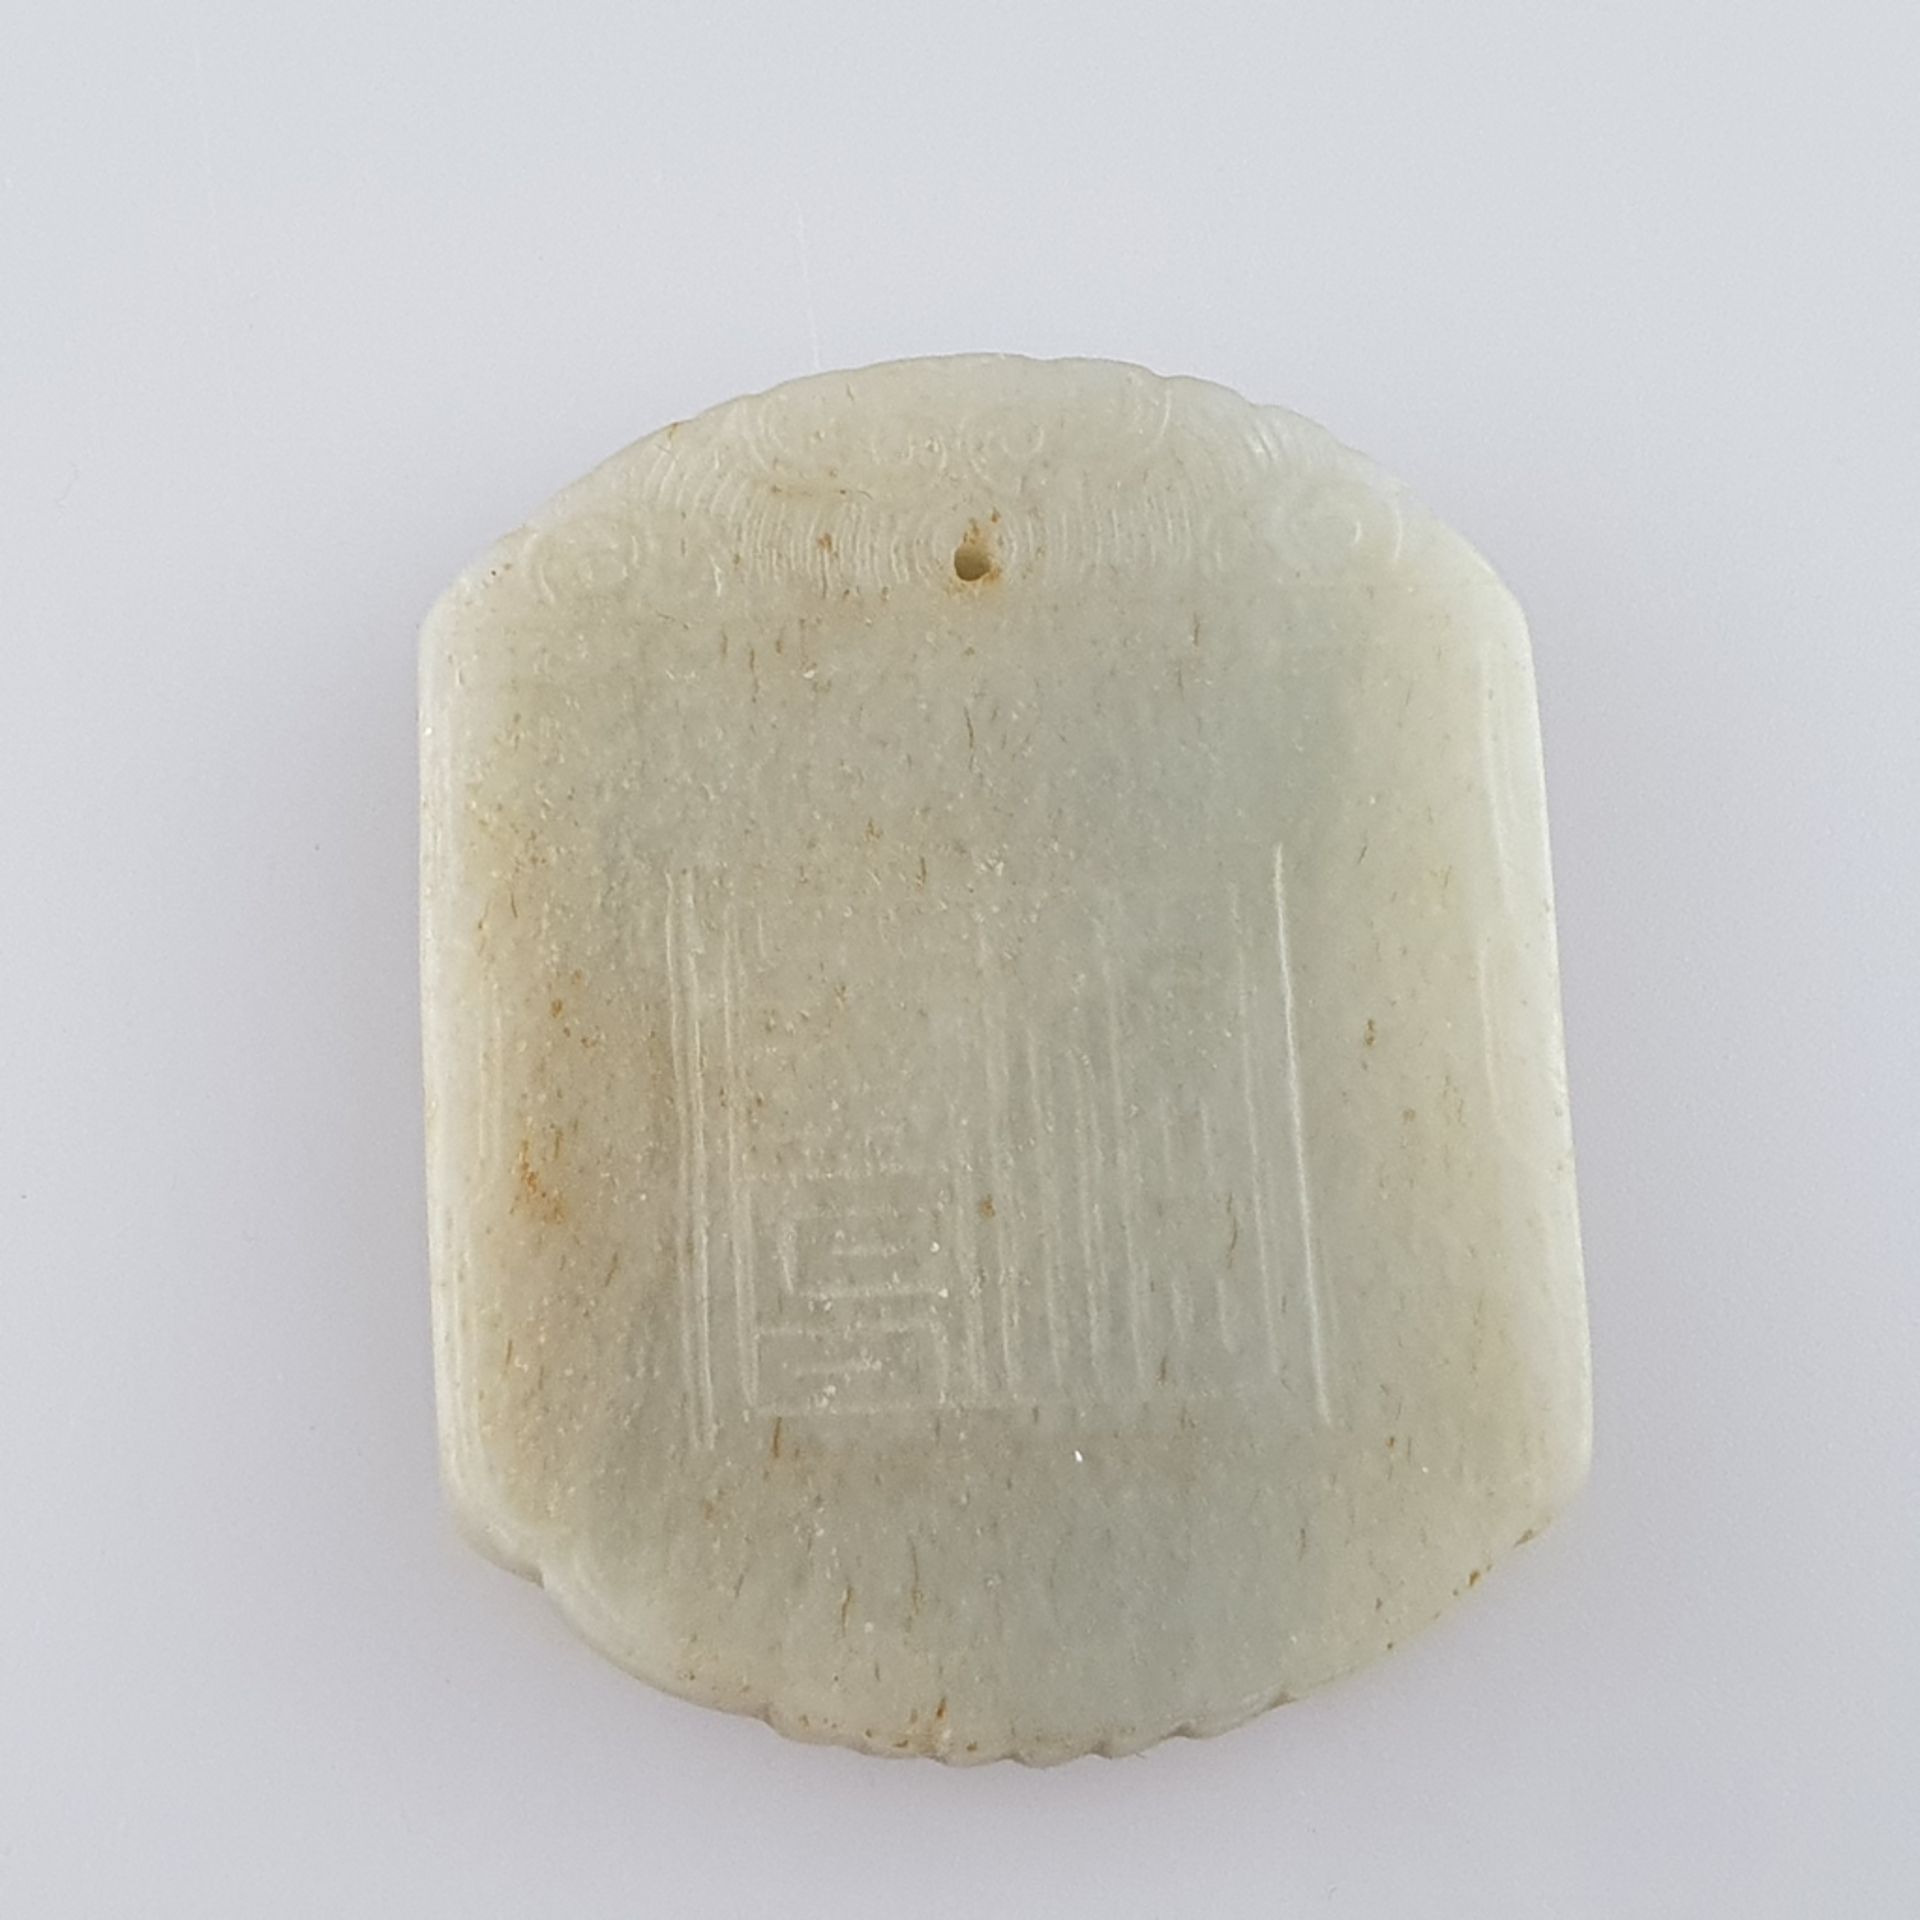 Jadeplakette - China, seladonfarbene Jade, rechteckig mit Segmentbogen-Abschlüssen, fein beschnitzt - Image 3 of 7